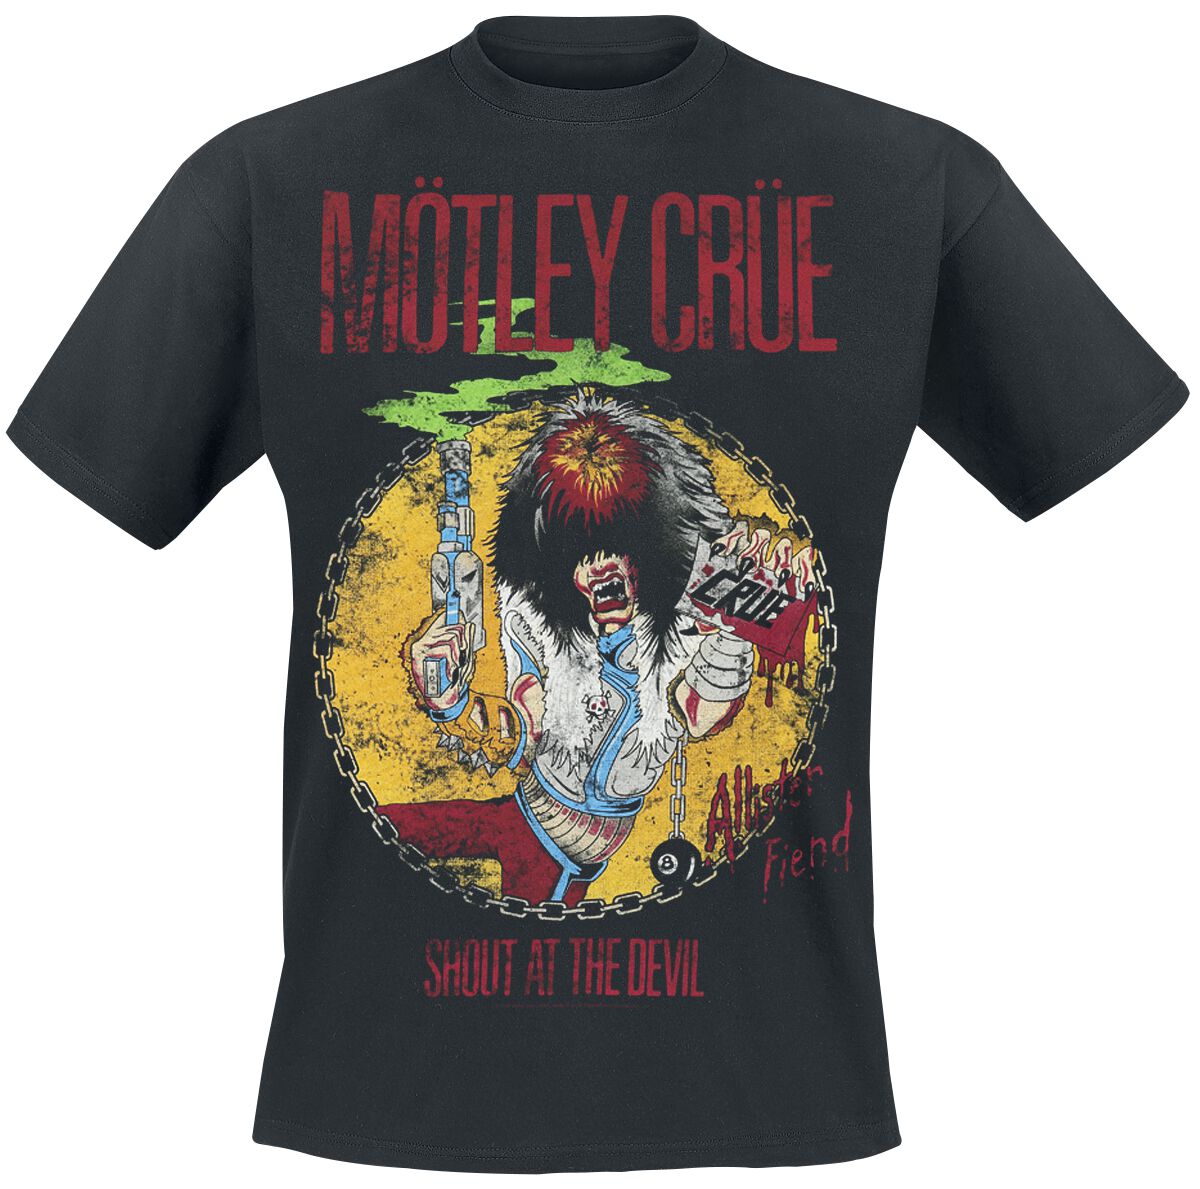 Mötley Crüe T-Shirt - Shout At The Devil - S bis XXL - für Männer - Größe S - schwarz  - Lizenziertes Merchandise!